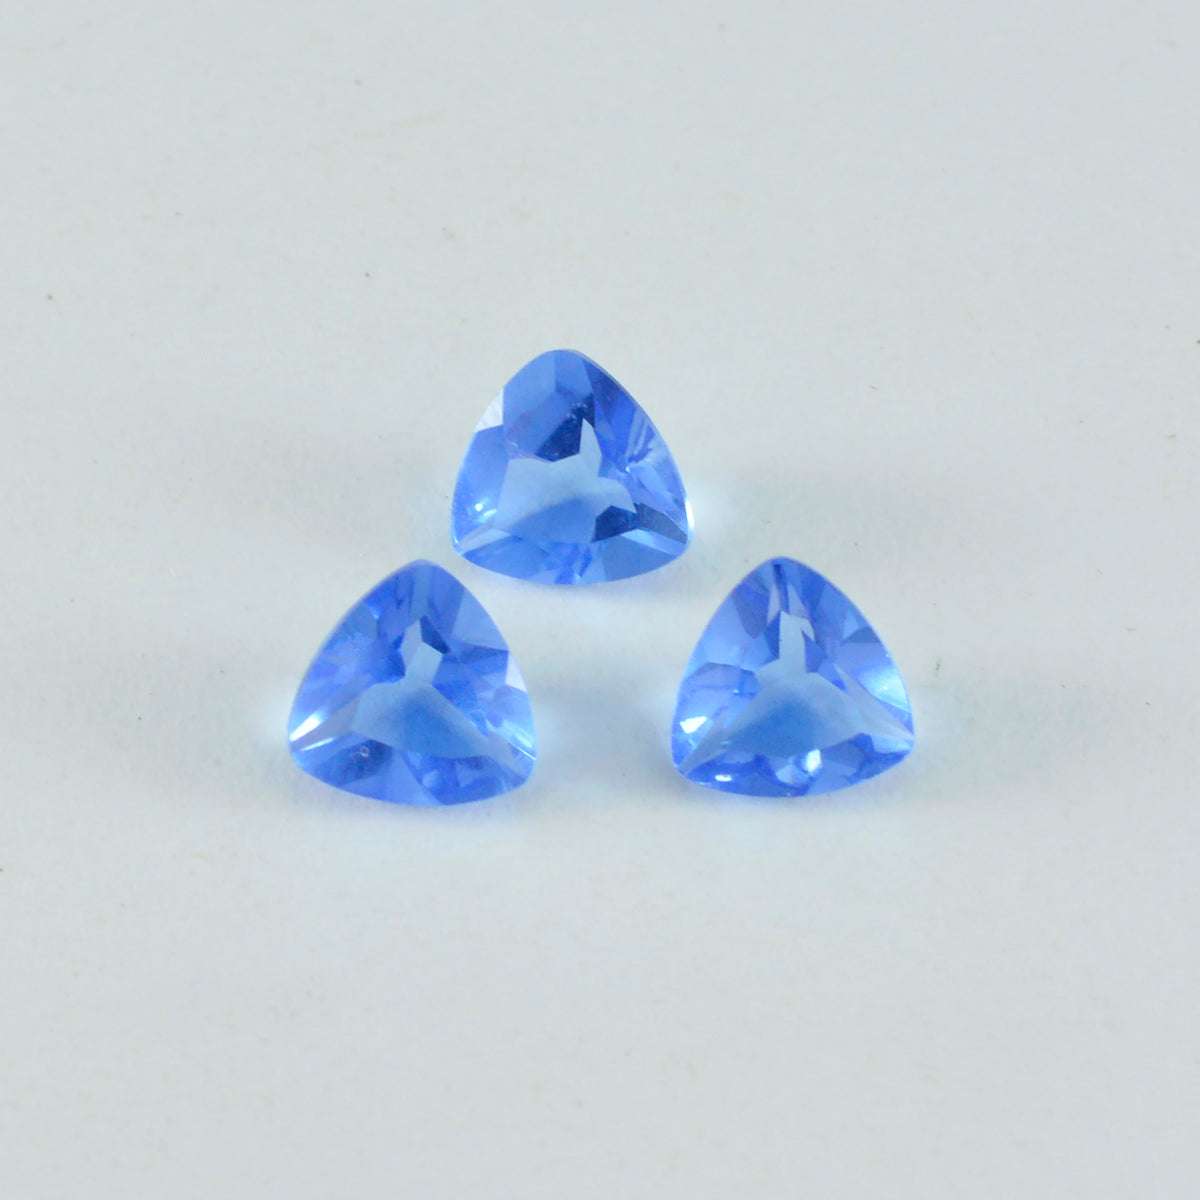 riyogems 1 шт. синий сапфир cz ограненный 10x10 мм драгоценные камни превосходного качества в форме триллиона